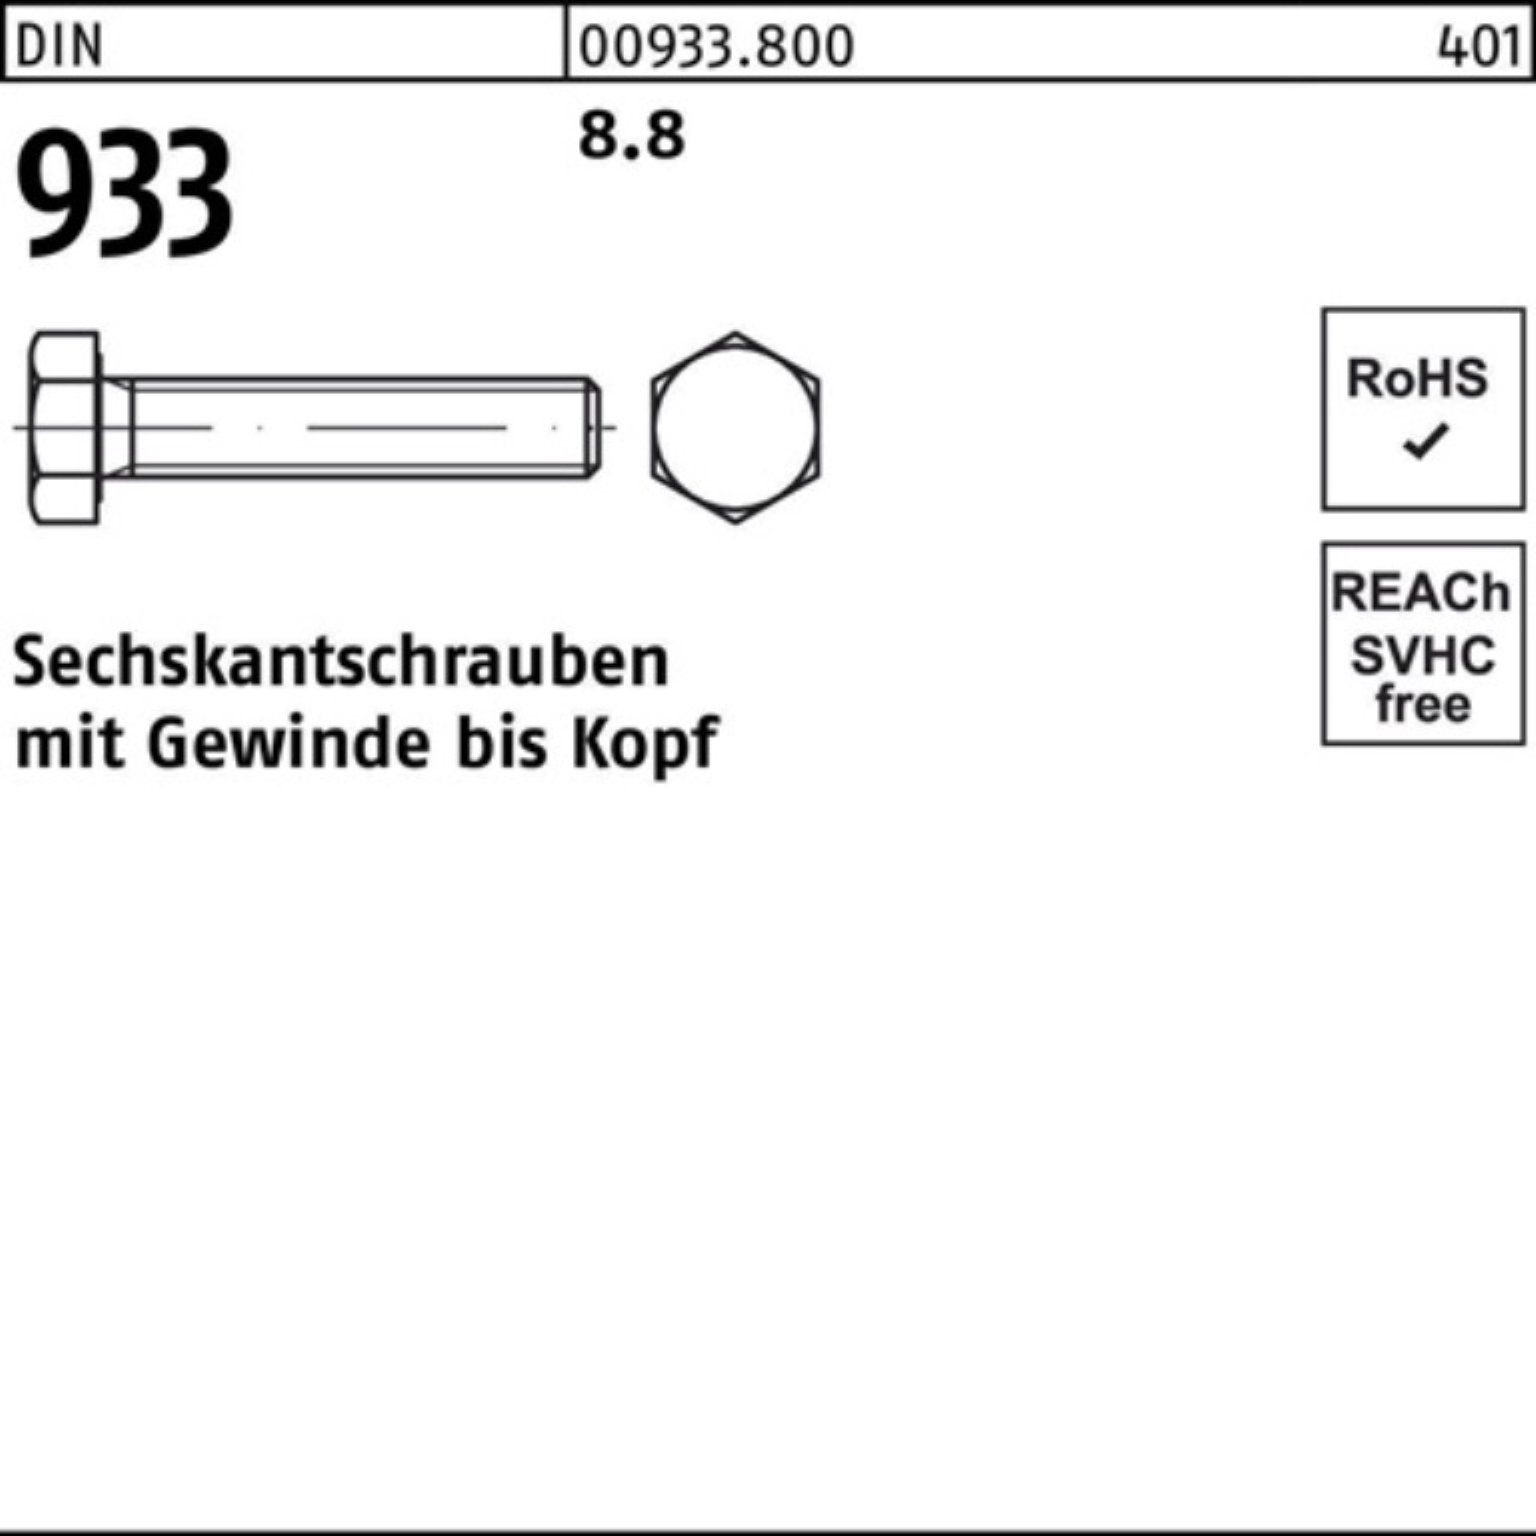 Sechskantschraube M22x Reyher 8.8 VG 933 60 DIN 100er Pack DIN 933 25 Stück Sechskantschraube